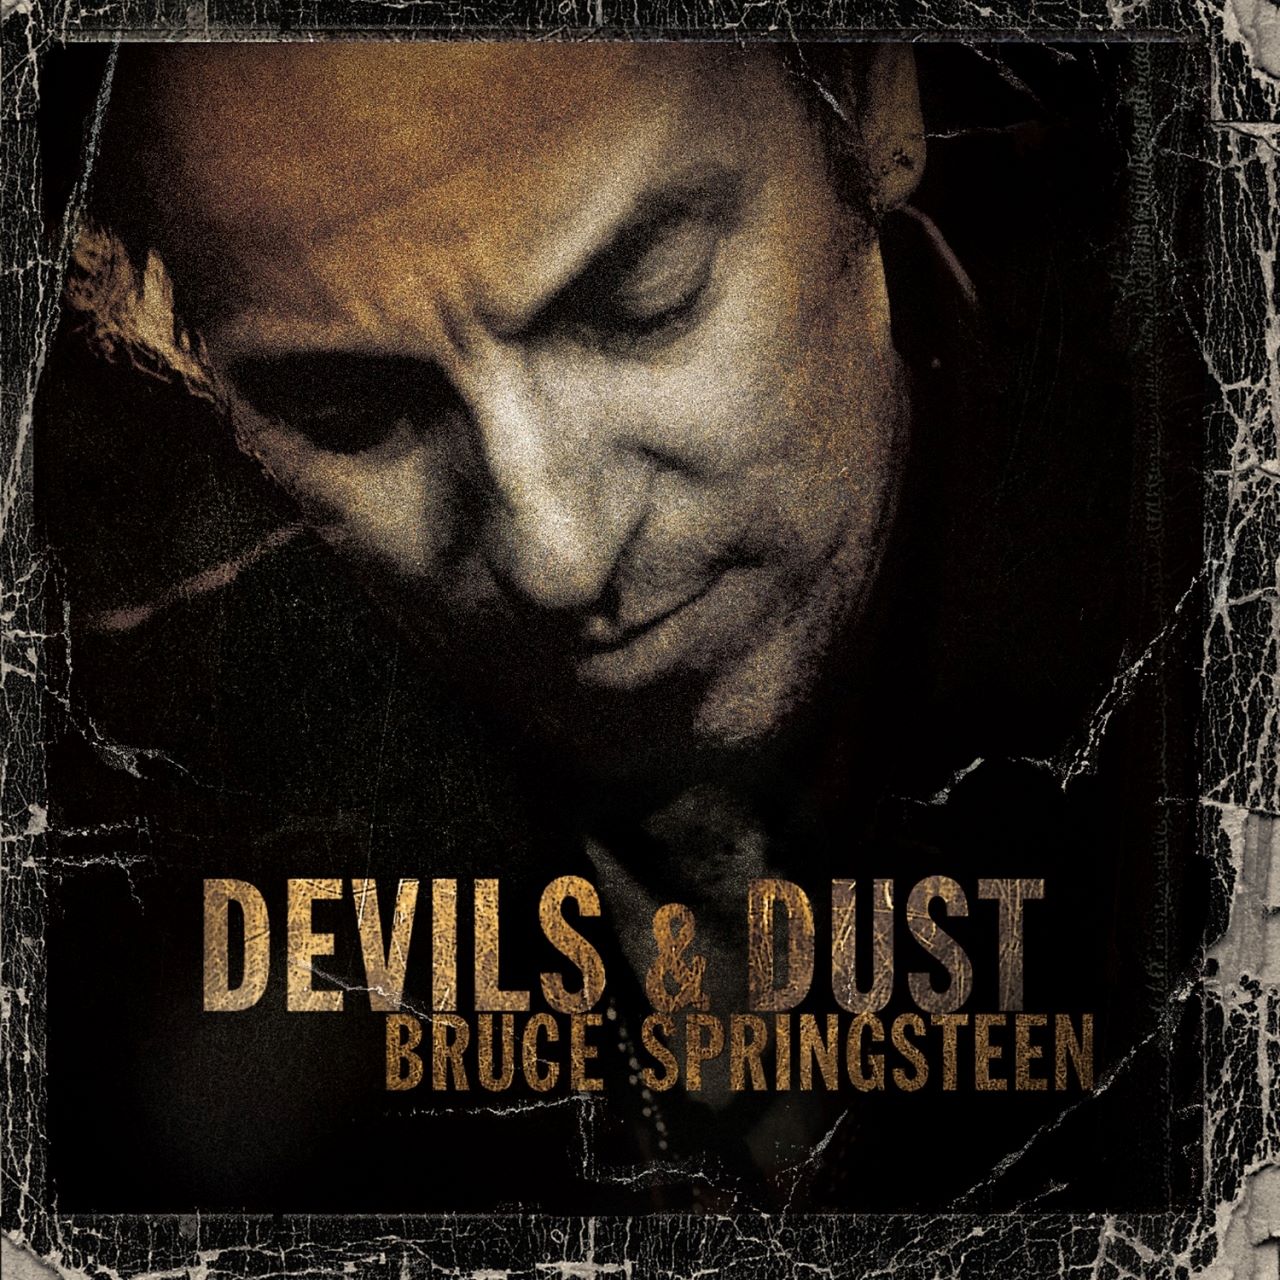 Bruce Springsteen - Devils & Dust cover album